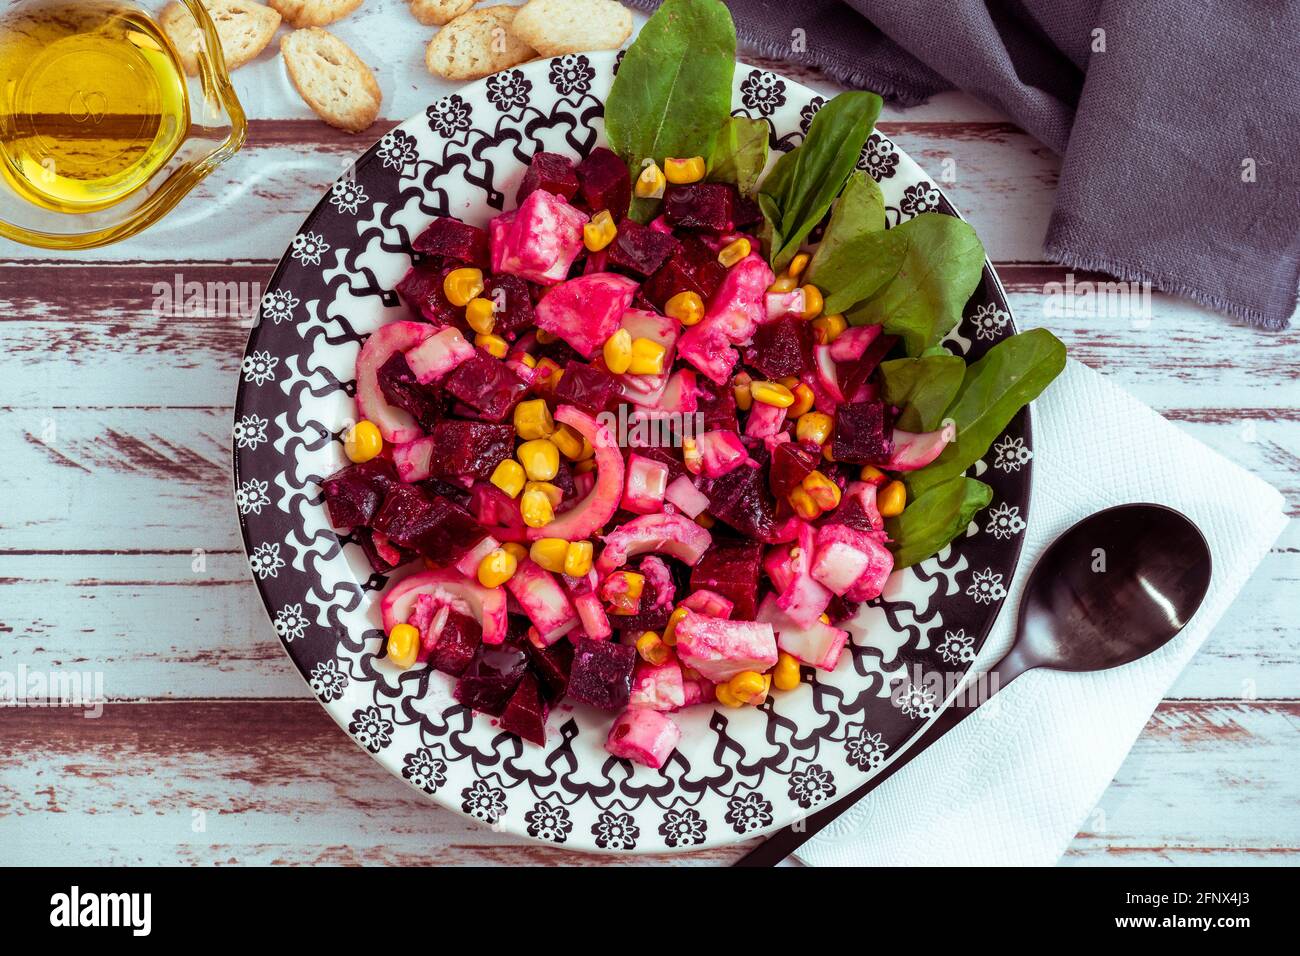 Salade de betteraves, ananas, maïs et chicorée à l'huile d'olive et au basilic sur une assiette sur une table rustique dans le style de la vie plate. Concept de légumes sains. Banque D'Images